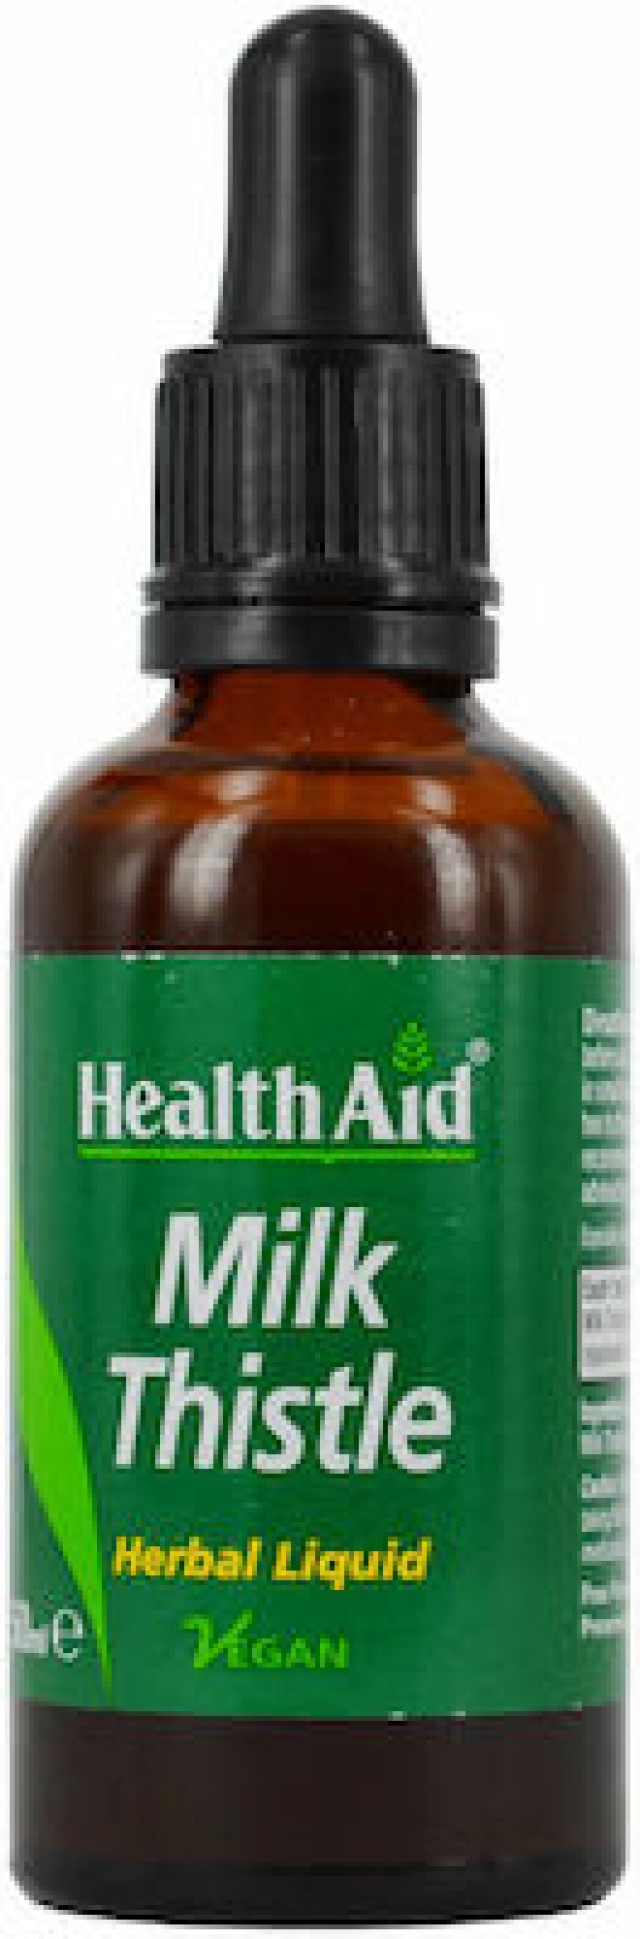 HEALTH AID Milk Thistle Liquid Συμπλήρωμα Διατροφής Με Γαϊδουράγκαθο Για Την Προστασία & Αποτοξίνωση Του Ήπατος Σε Σταγόνες, 50ml